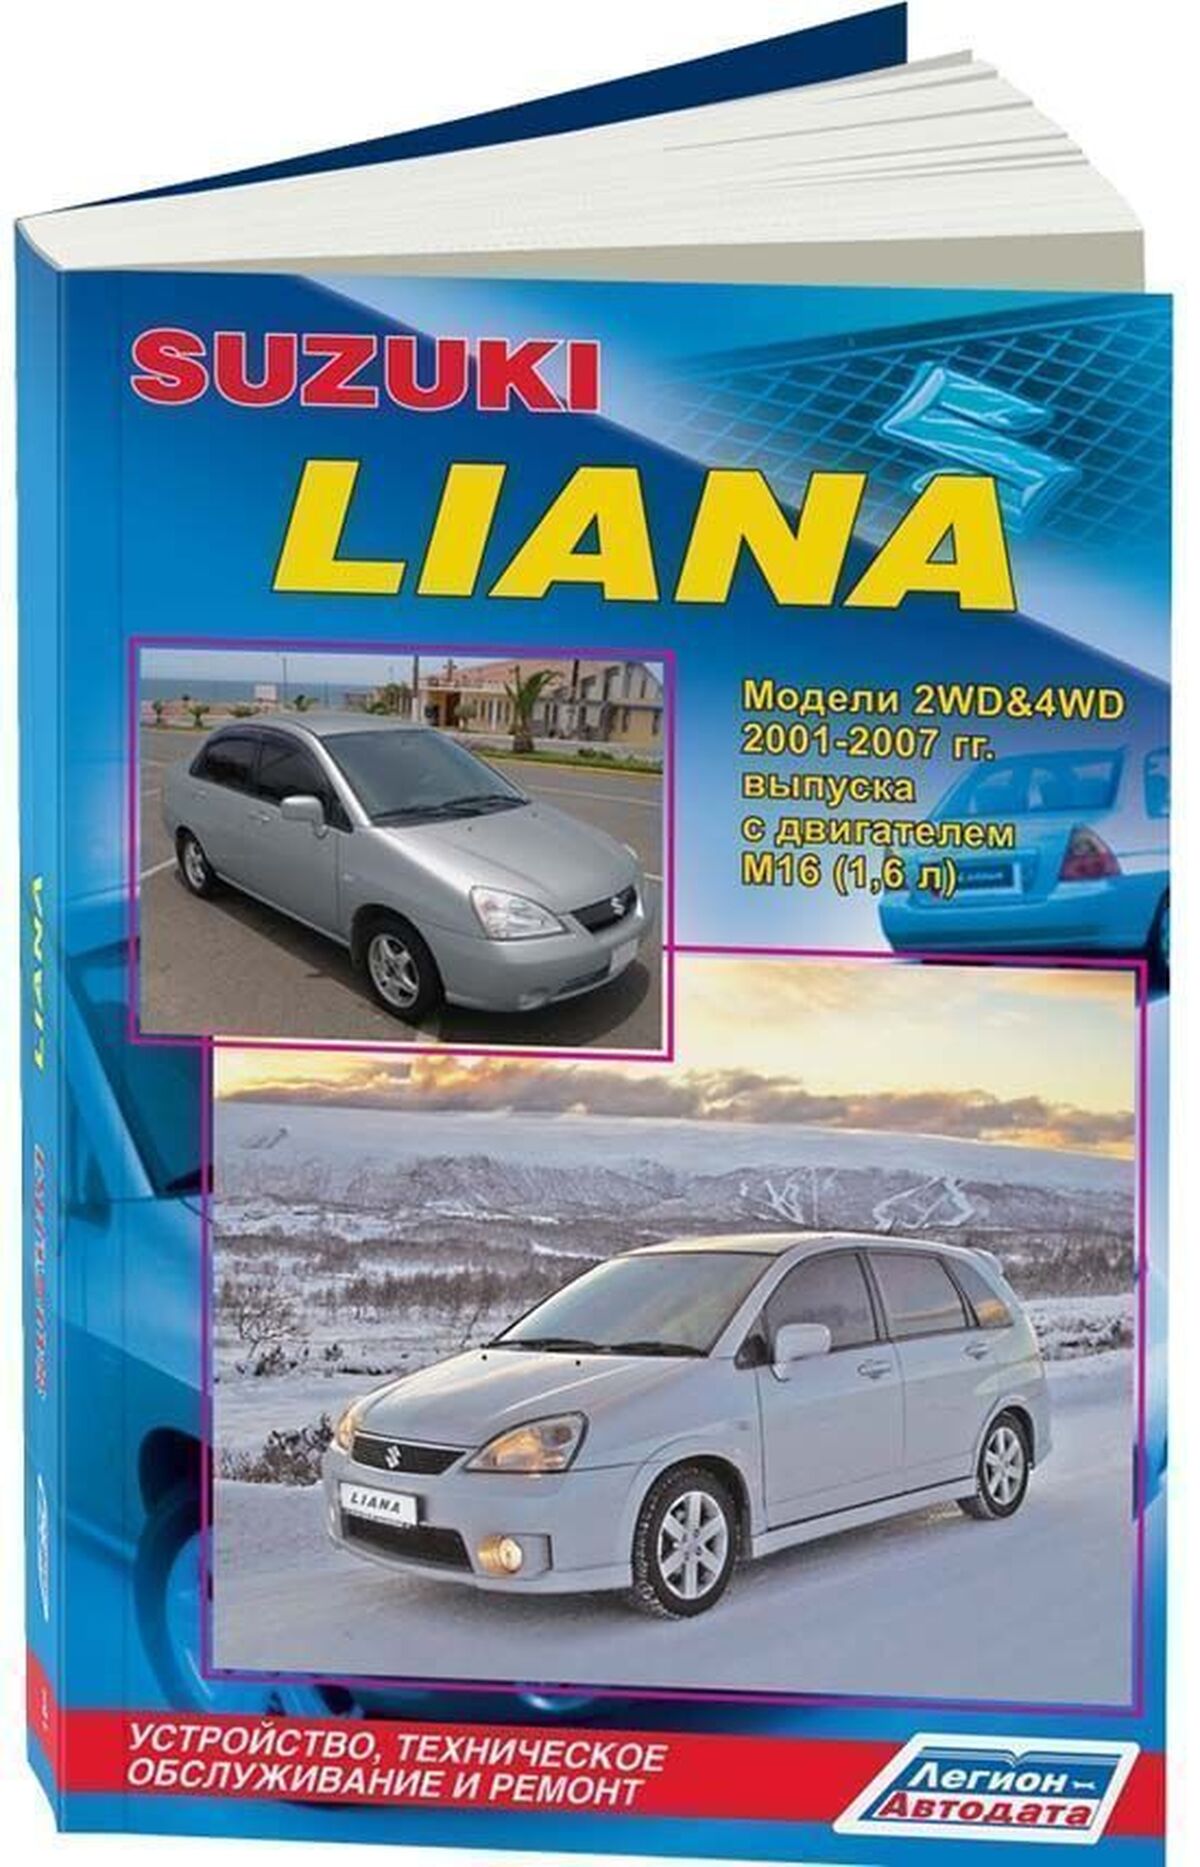 Книга: SUZUKI LIANA (б) 2001-2007 г.в., рем., экспл., то | Легион-Aвтодата